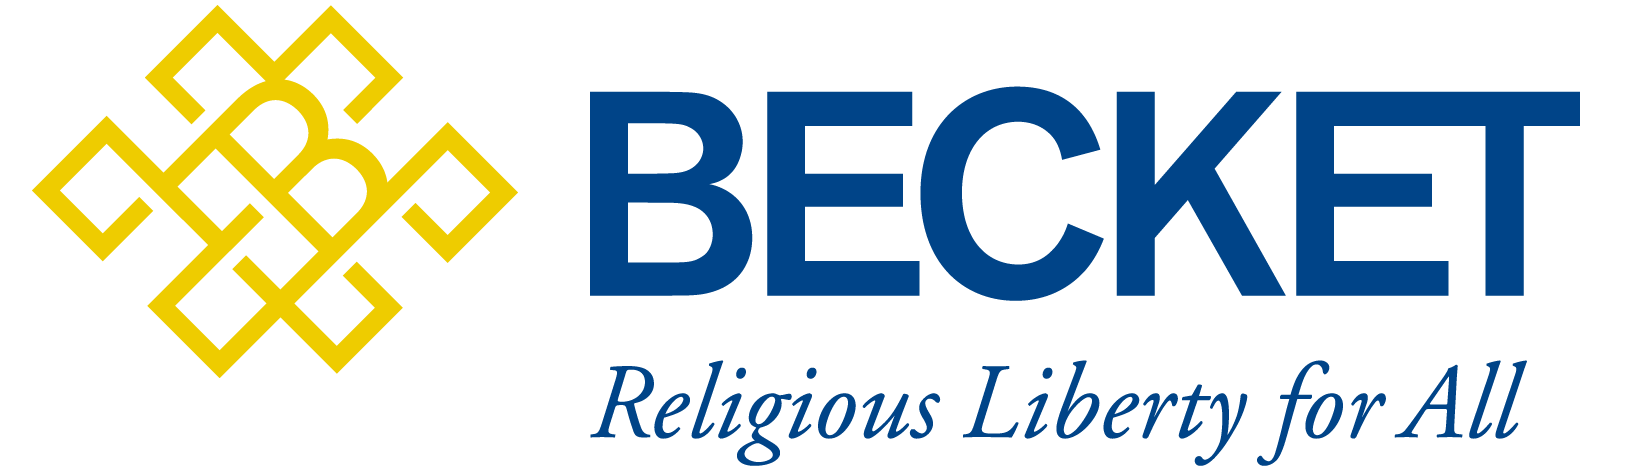 Becket-Logo